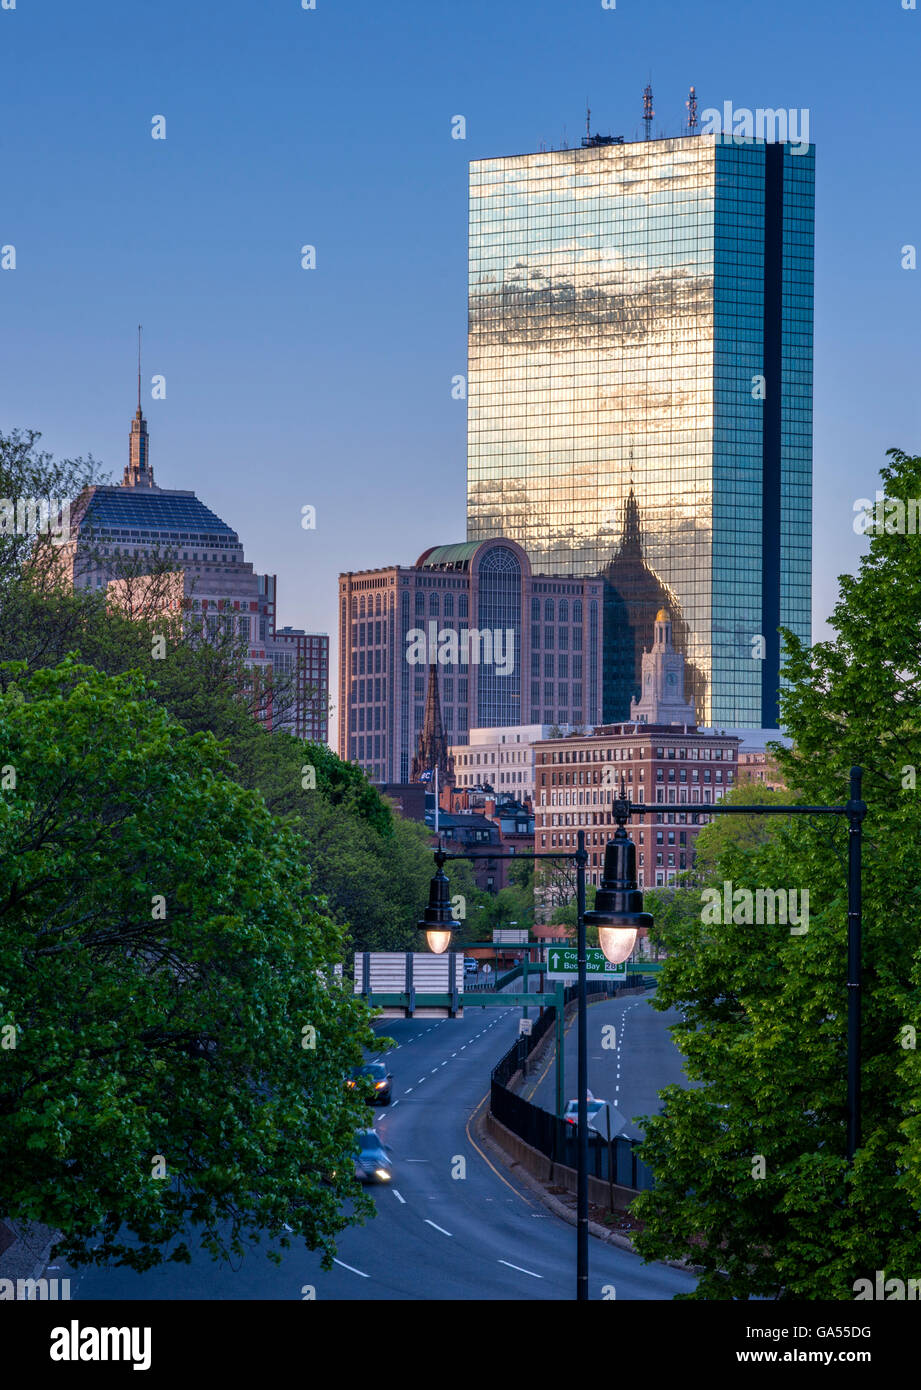 La mattina presto Boston immagine comprendente la torre Hancock lungo Storrow Drive con vibrante blu del cielo e il riflesso del cielo. Foto Stock